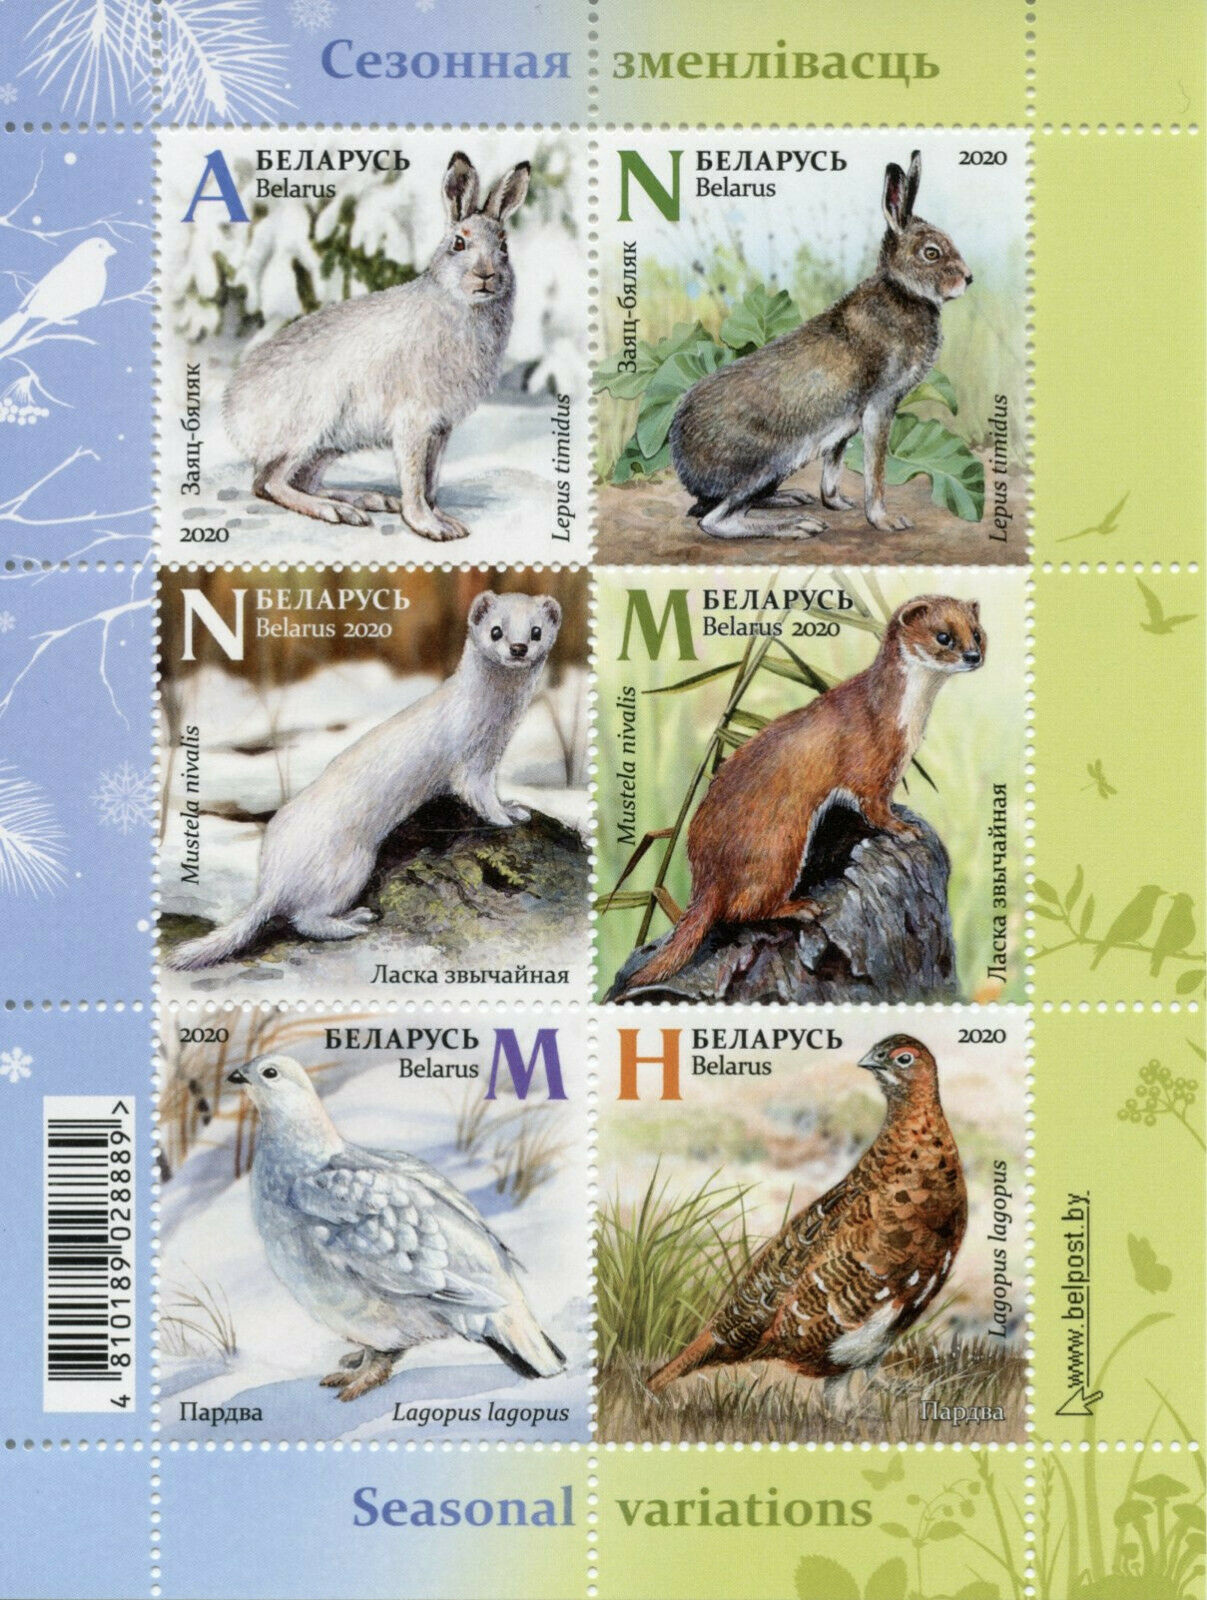 Belarus Fauna Stamps 2020 MNH Seasonal Variations Hares Weasel Birds 6v M/S